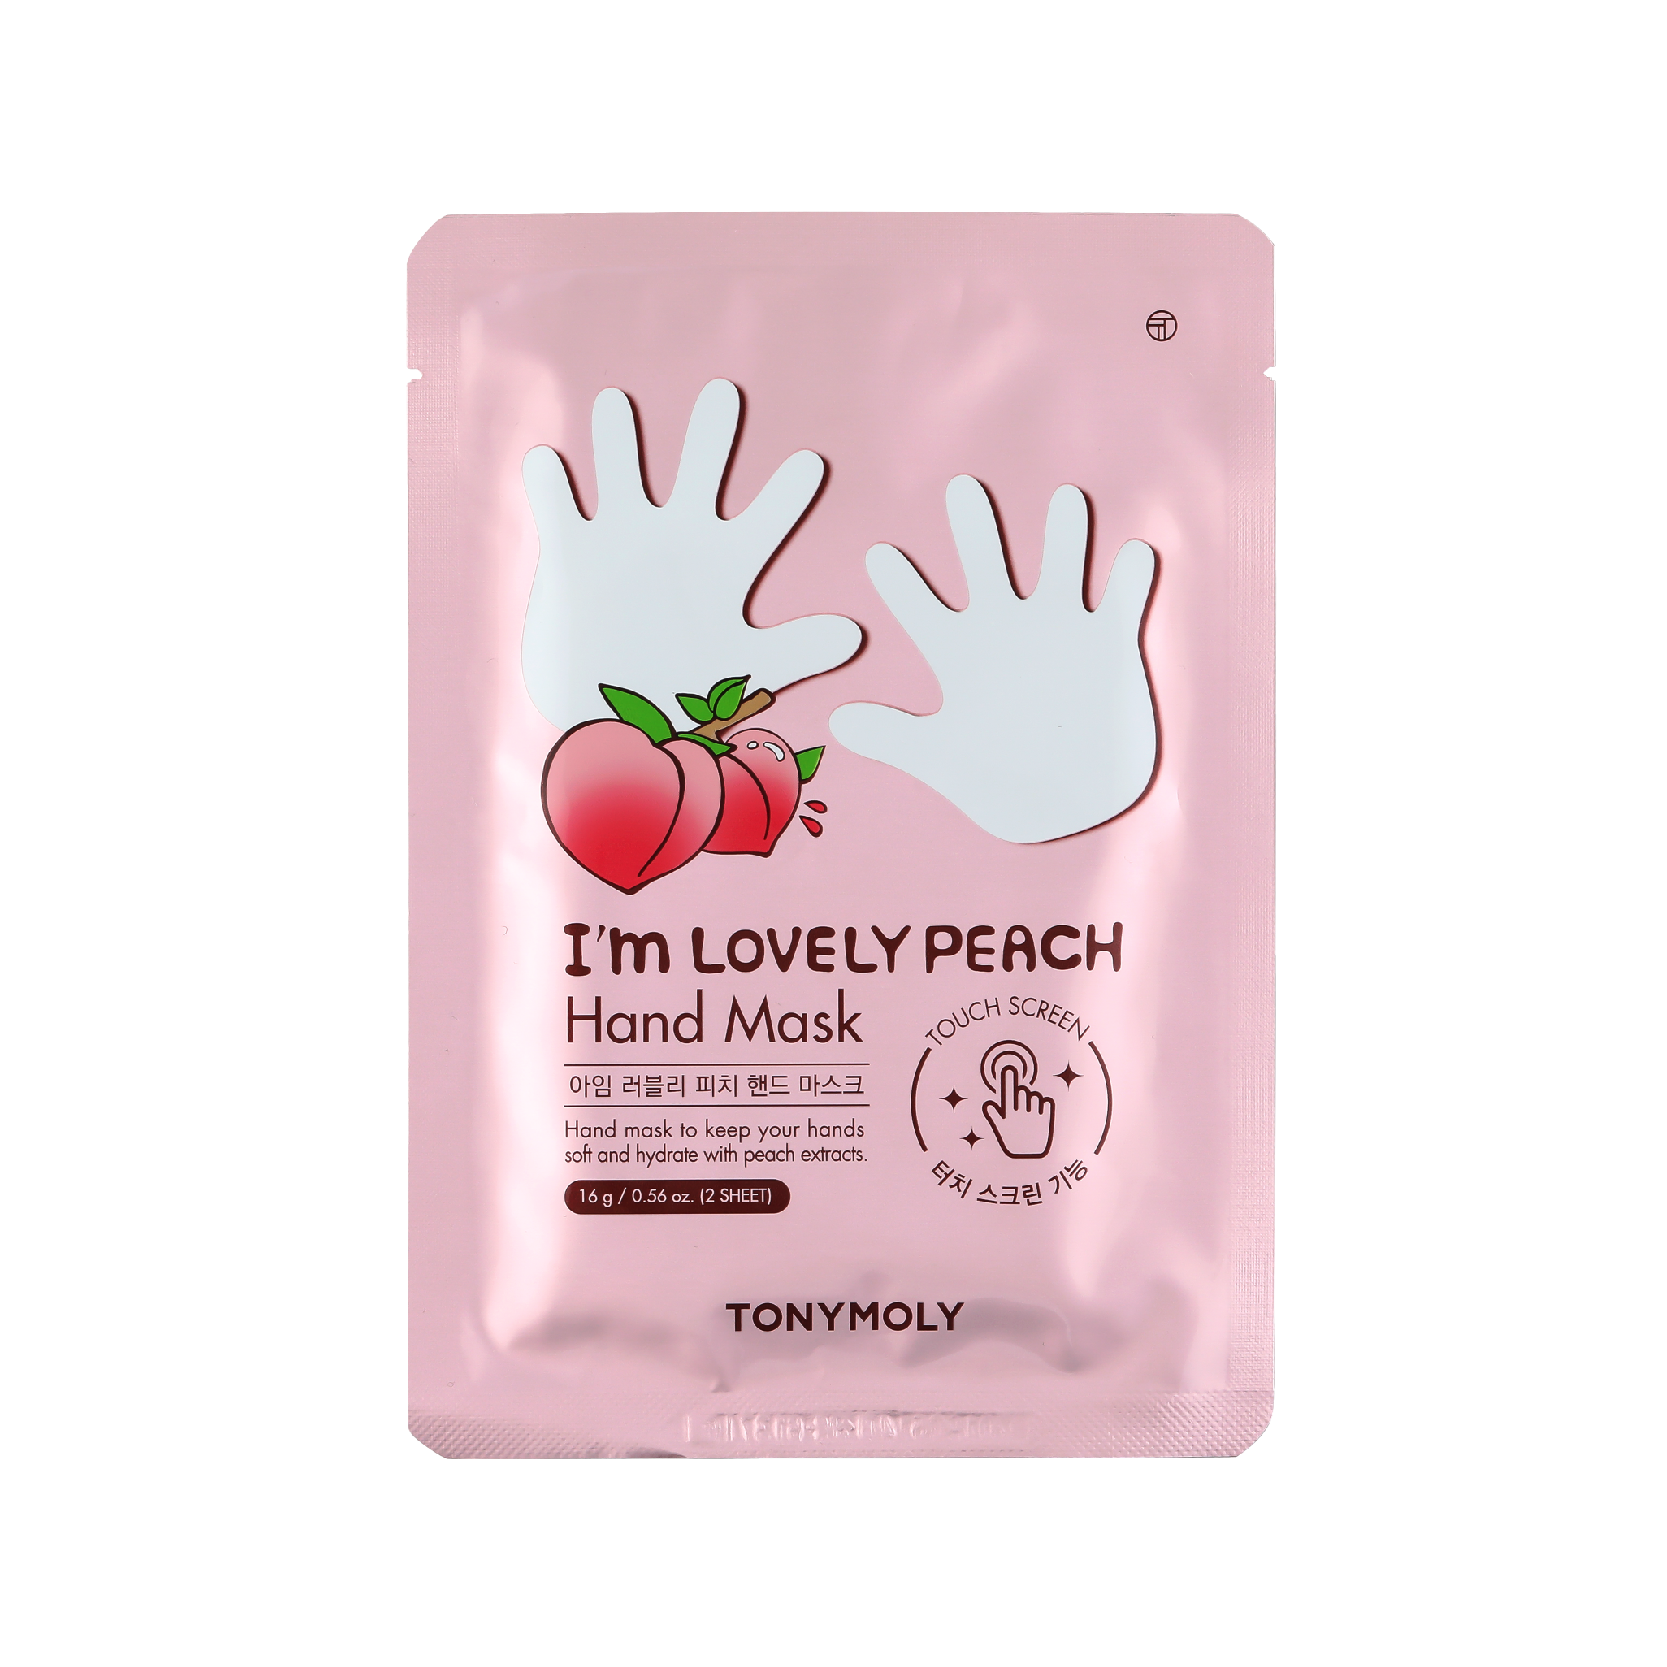 I'm Lovely Peach Hand Mask